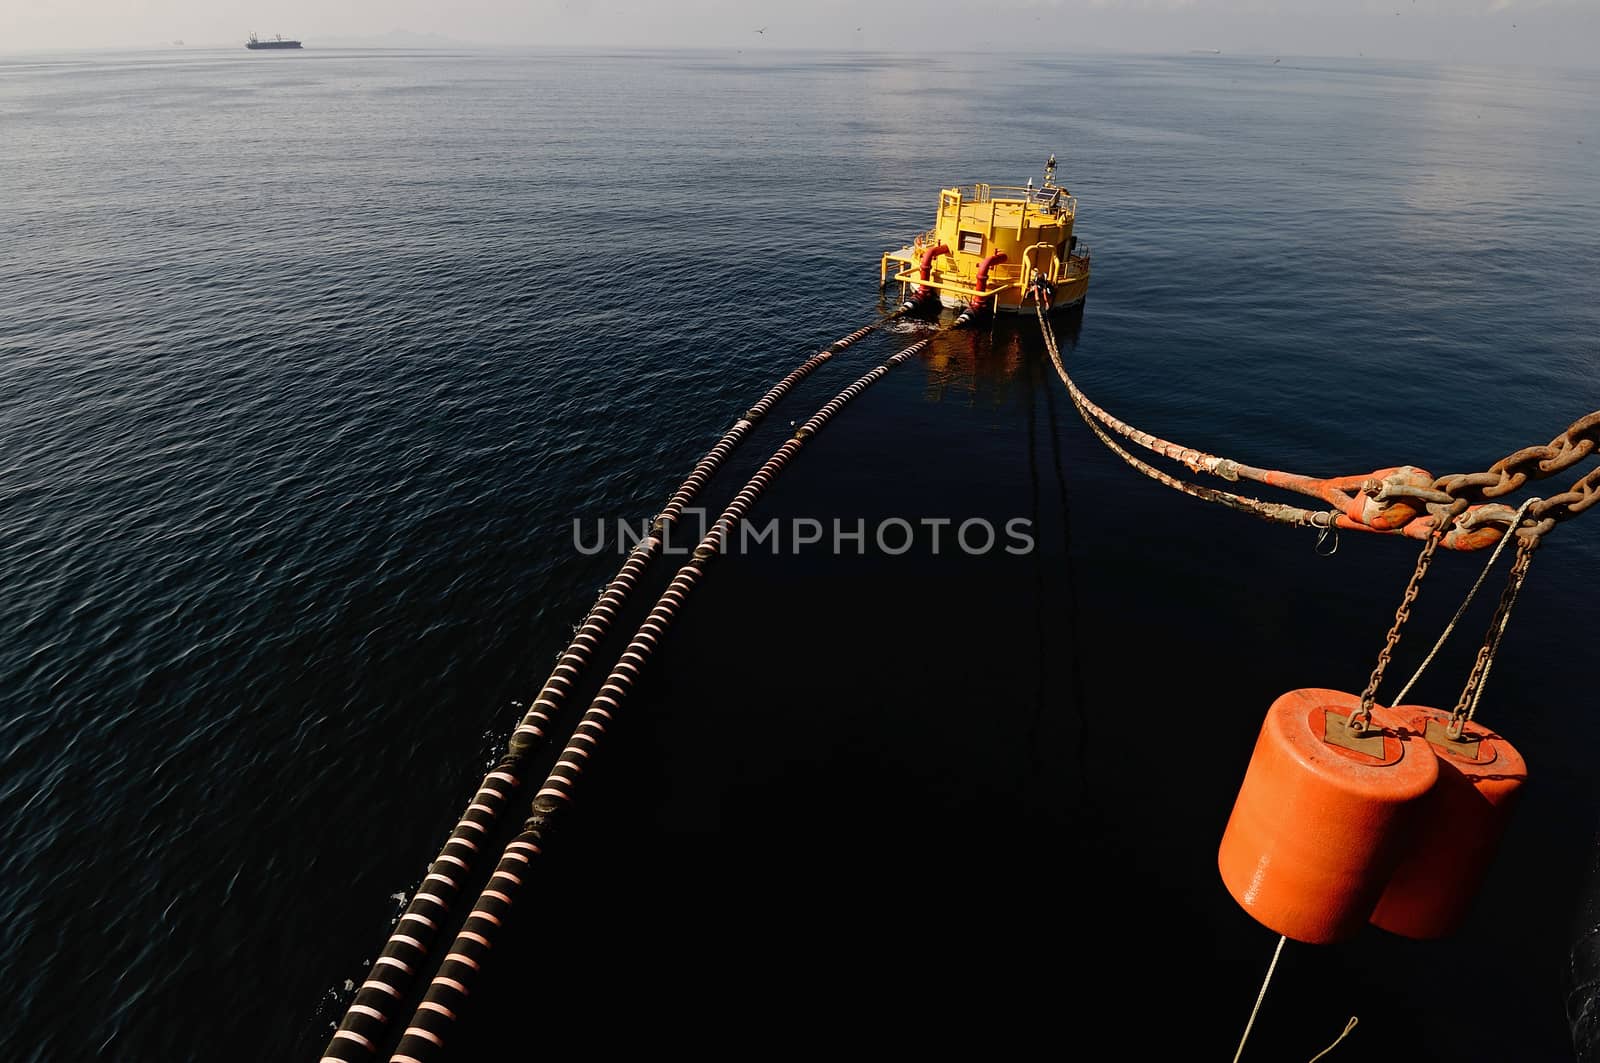 oil-carrier in port for loading